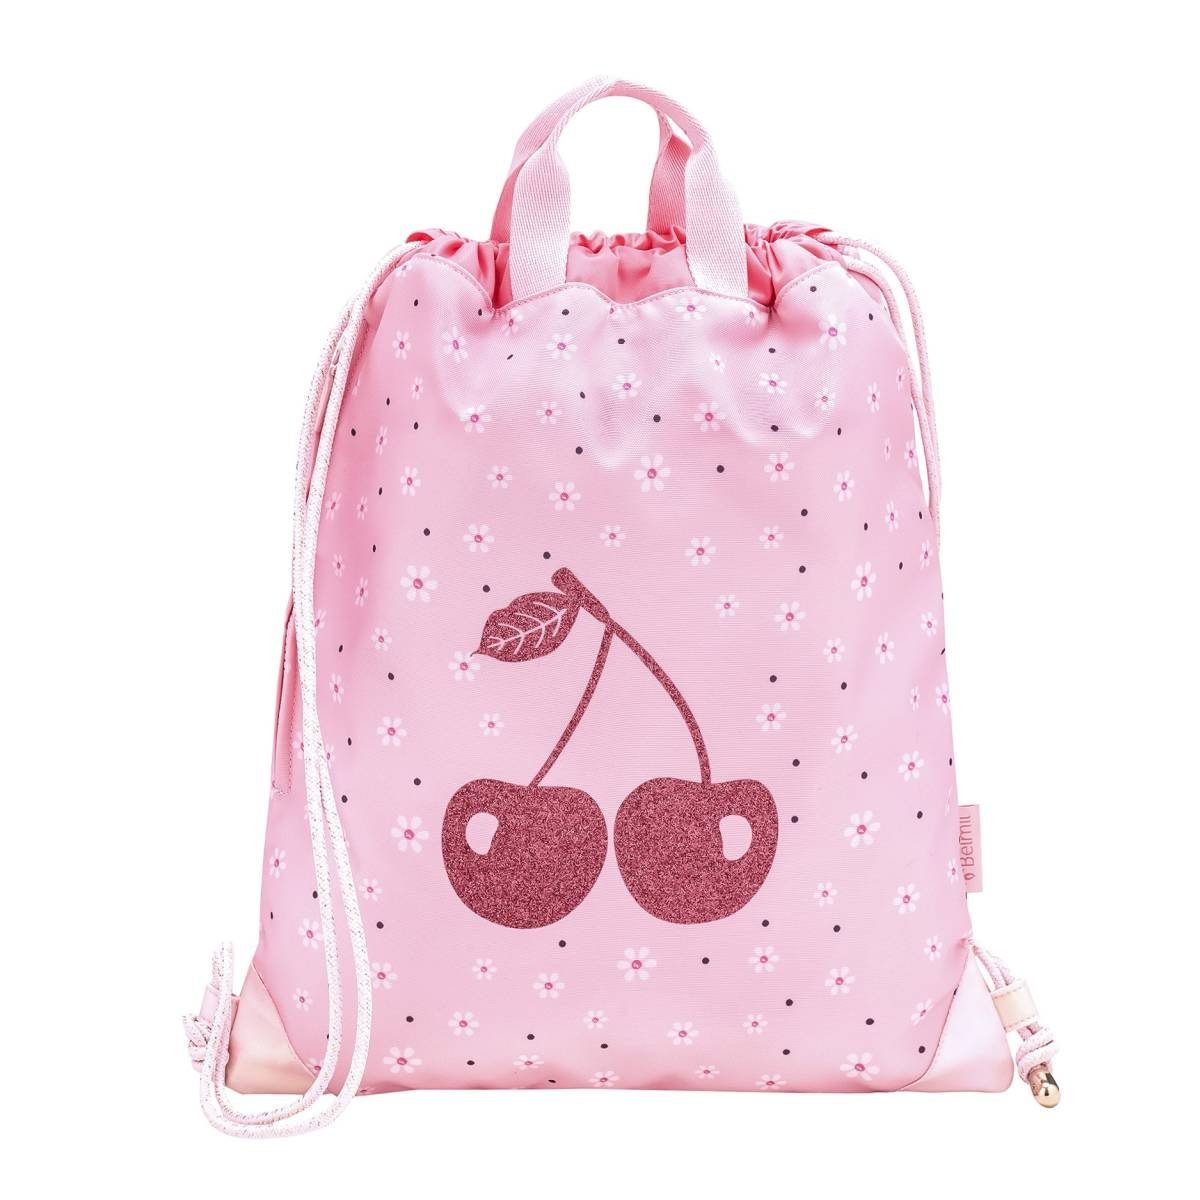 Belmil Sporttasche Premium, Turnbeutel, Schulsporttasche, Gym-Bag, für Mädchen Cherry Blossom